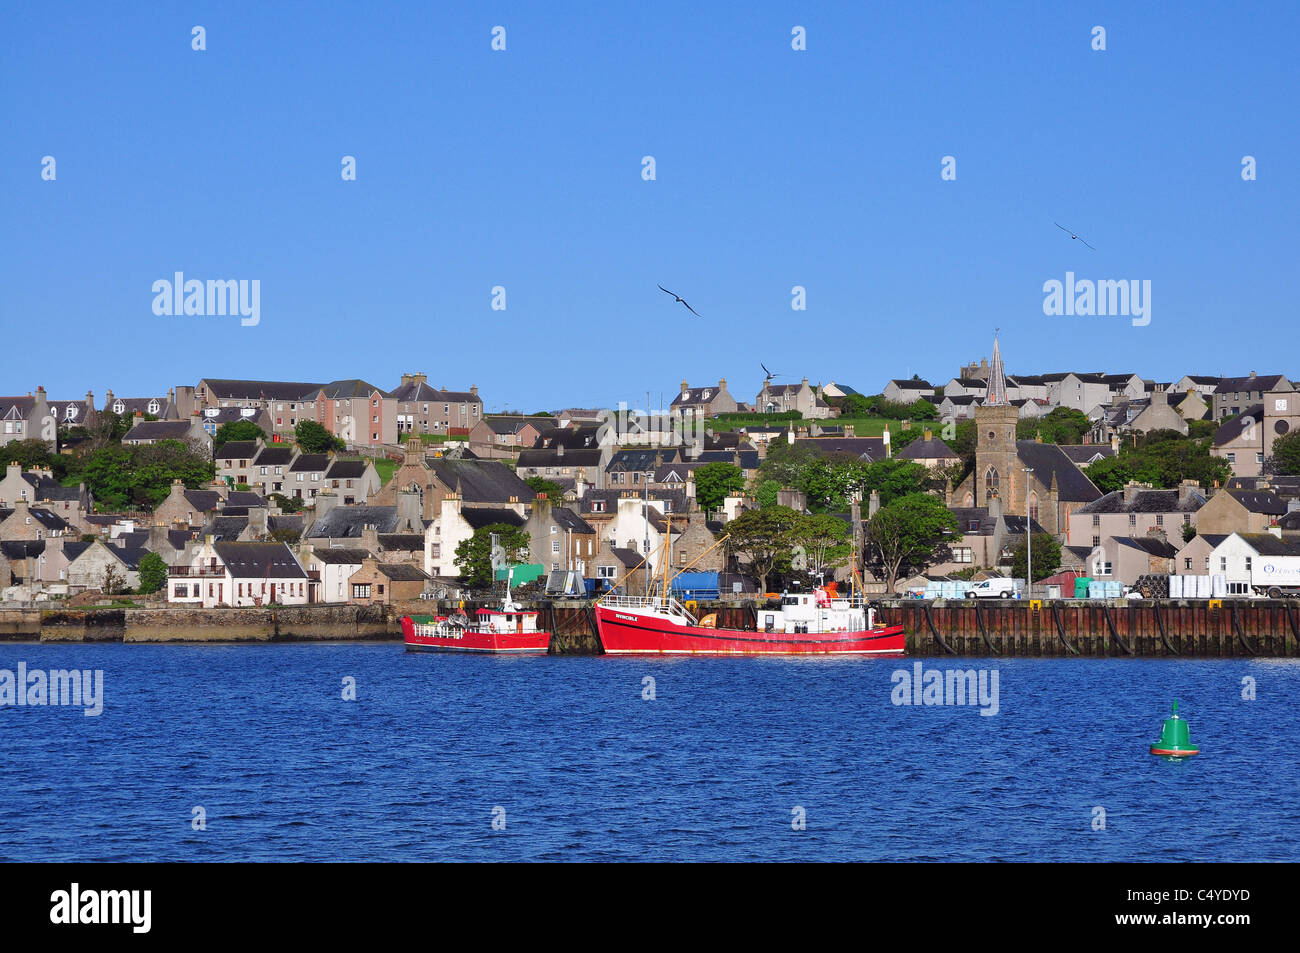 La ville et le port, Stromness, Orkney, Écosse continentale. Banque D'Images